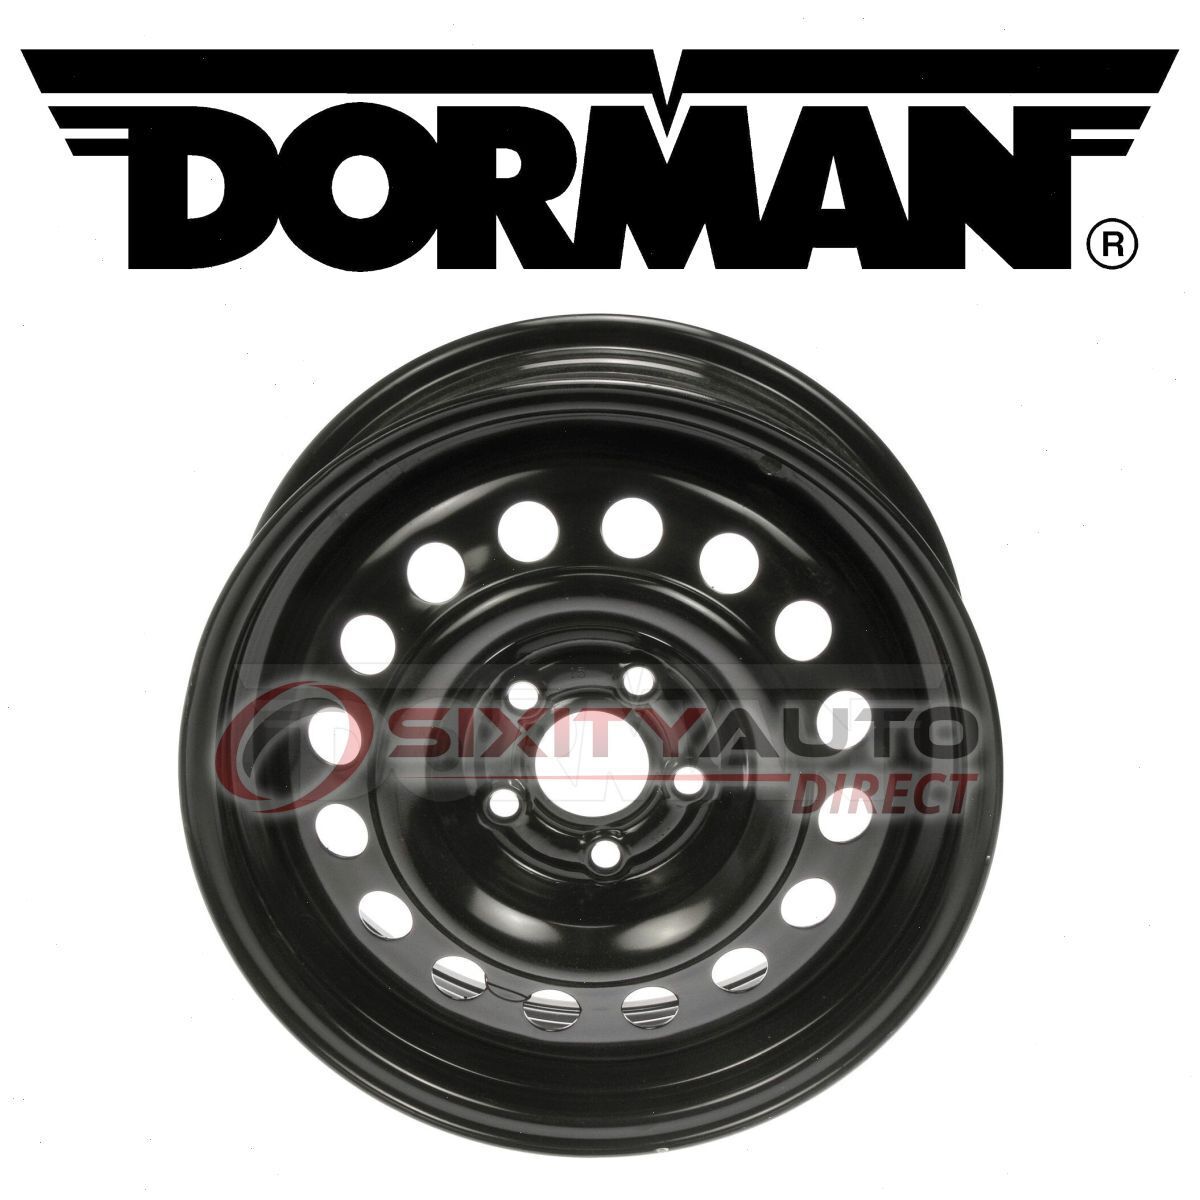 Dorman Wheel for 1994-1996 Chevrolet Beretta Tire  ne